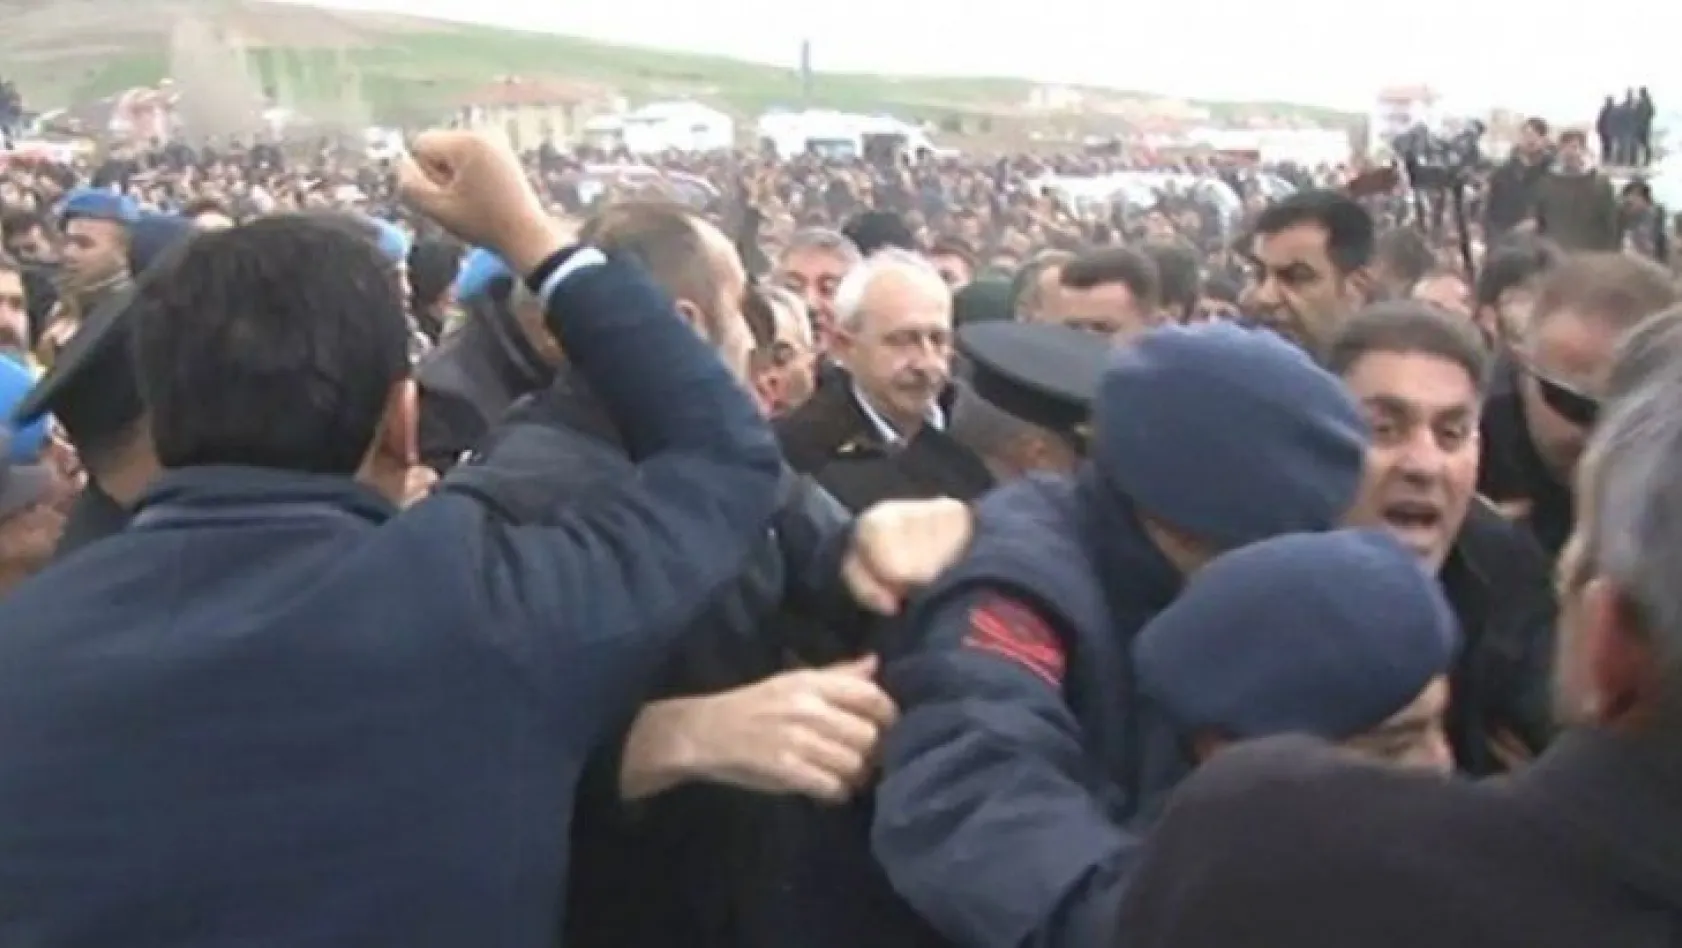 Kemal Kılıçdaroğlu'na şehit cenazesinde saldırı